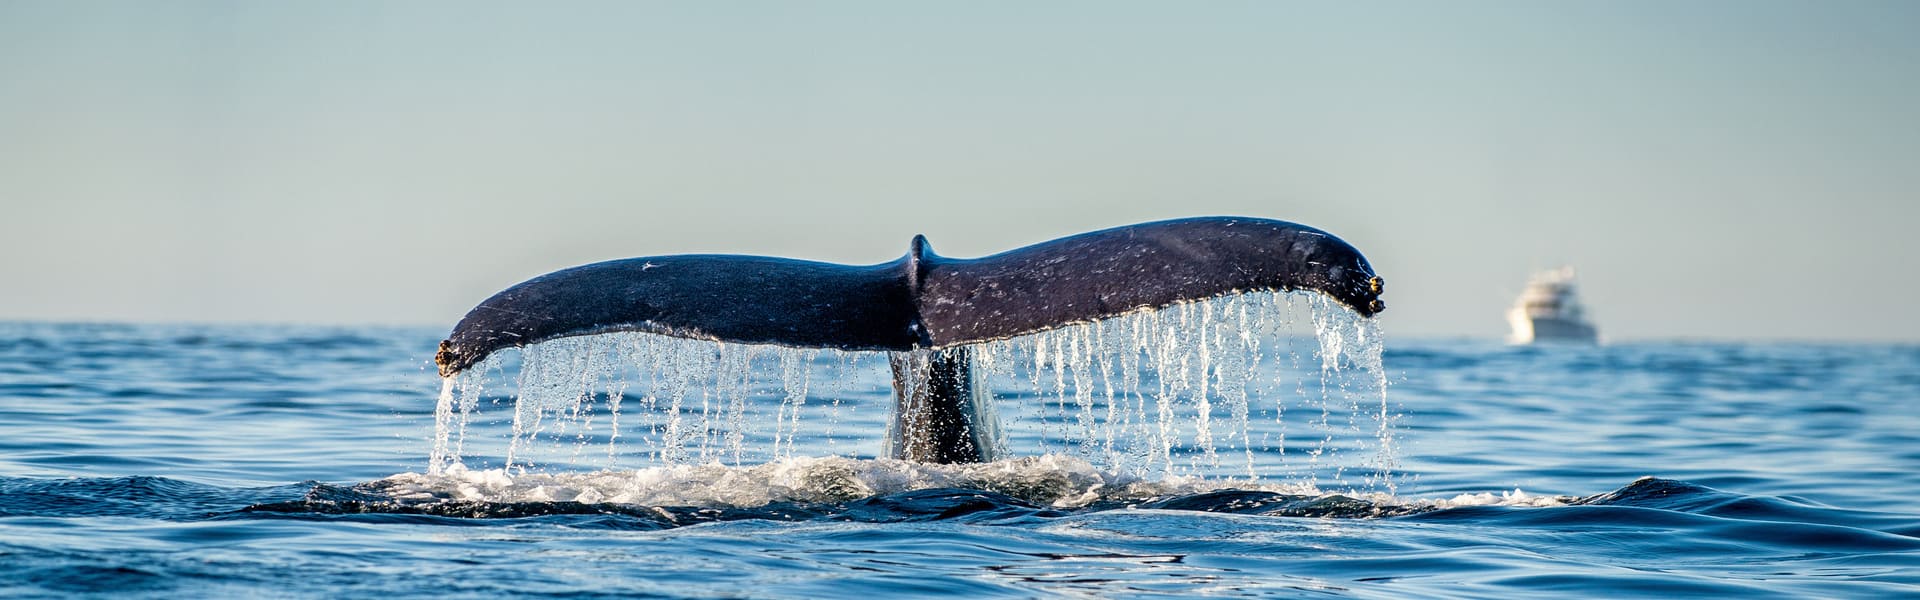 Avistamiento de ballenas y bus panorámico